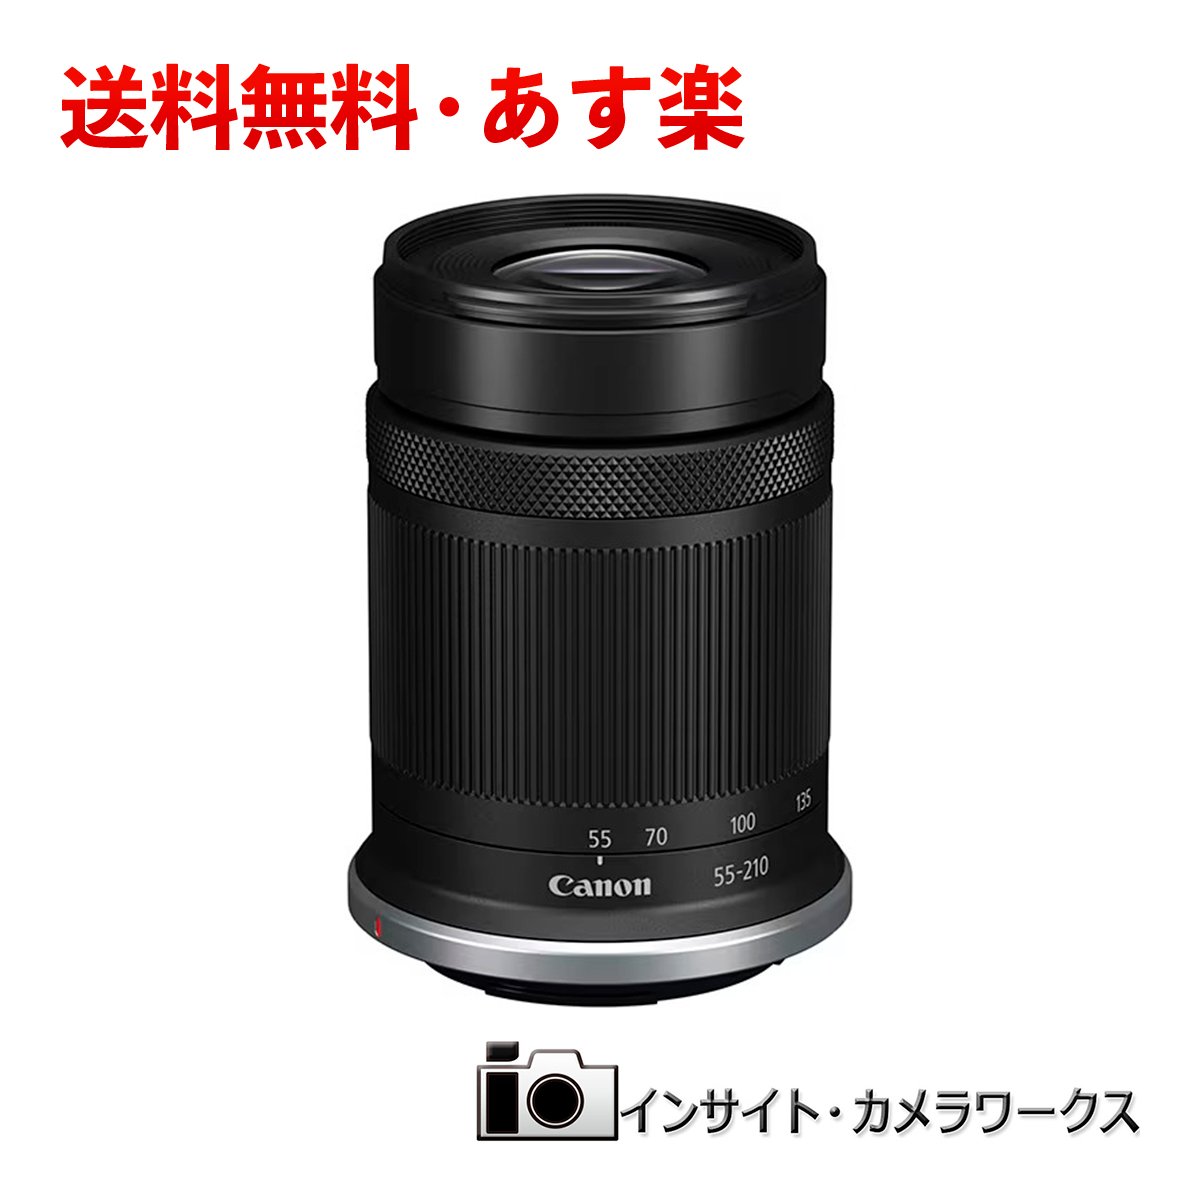 商舗 Canon EF-S55-250mm IS 望遠レンズ ad-naturam.fr